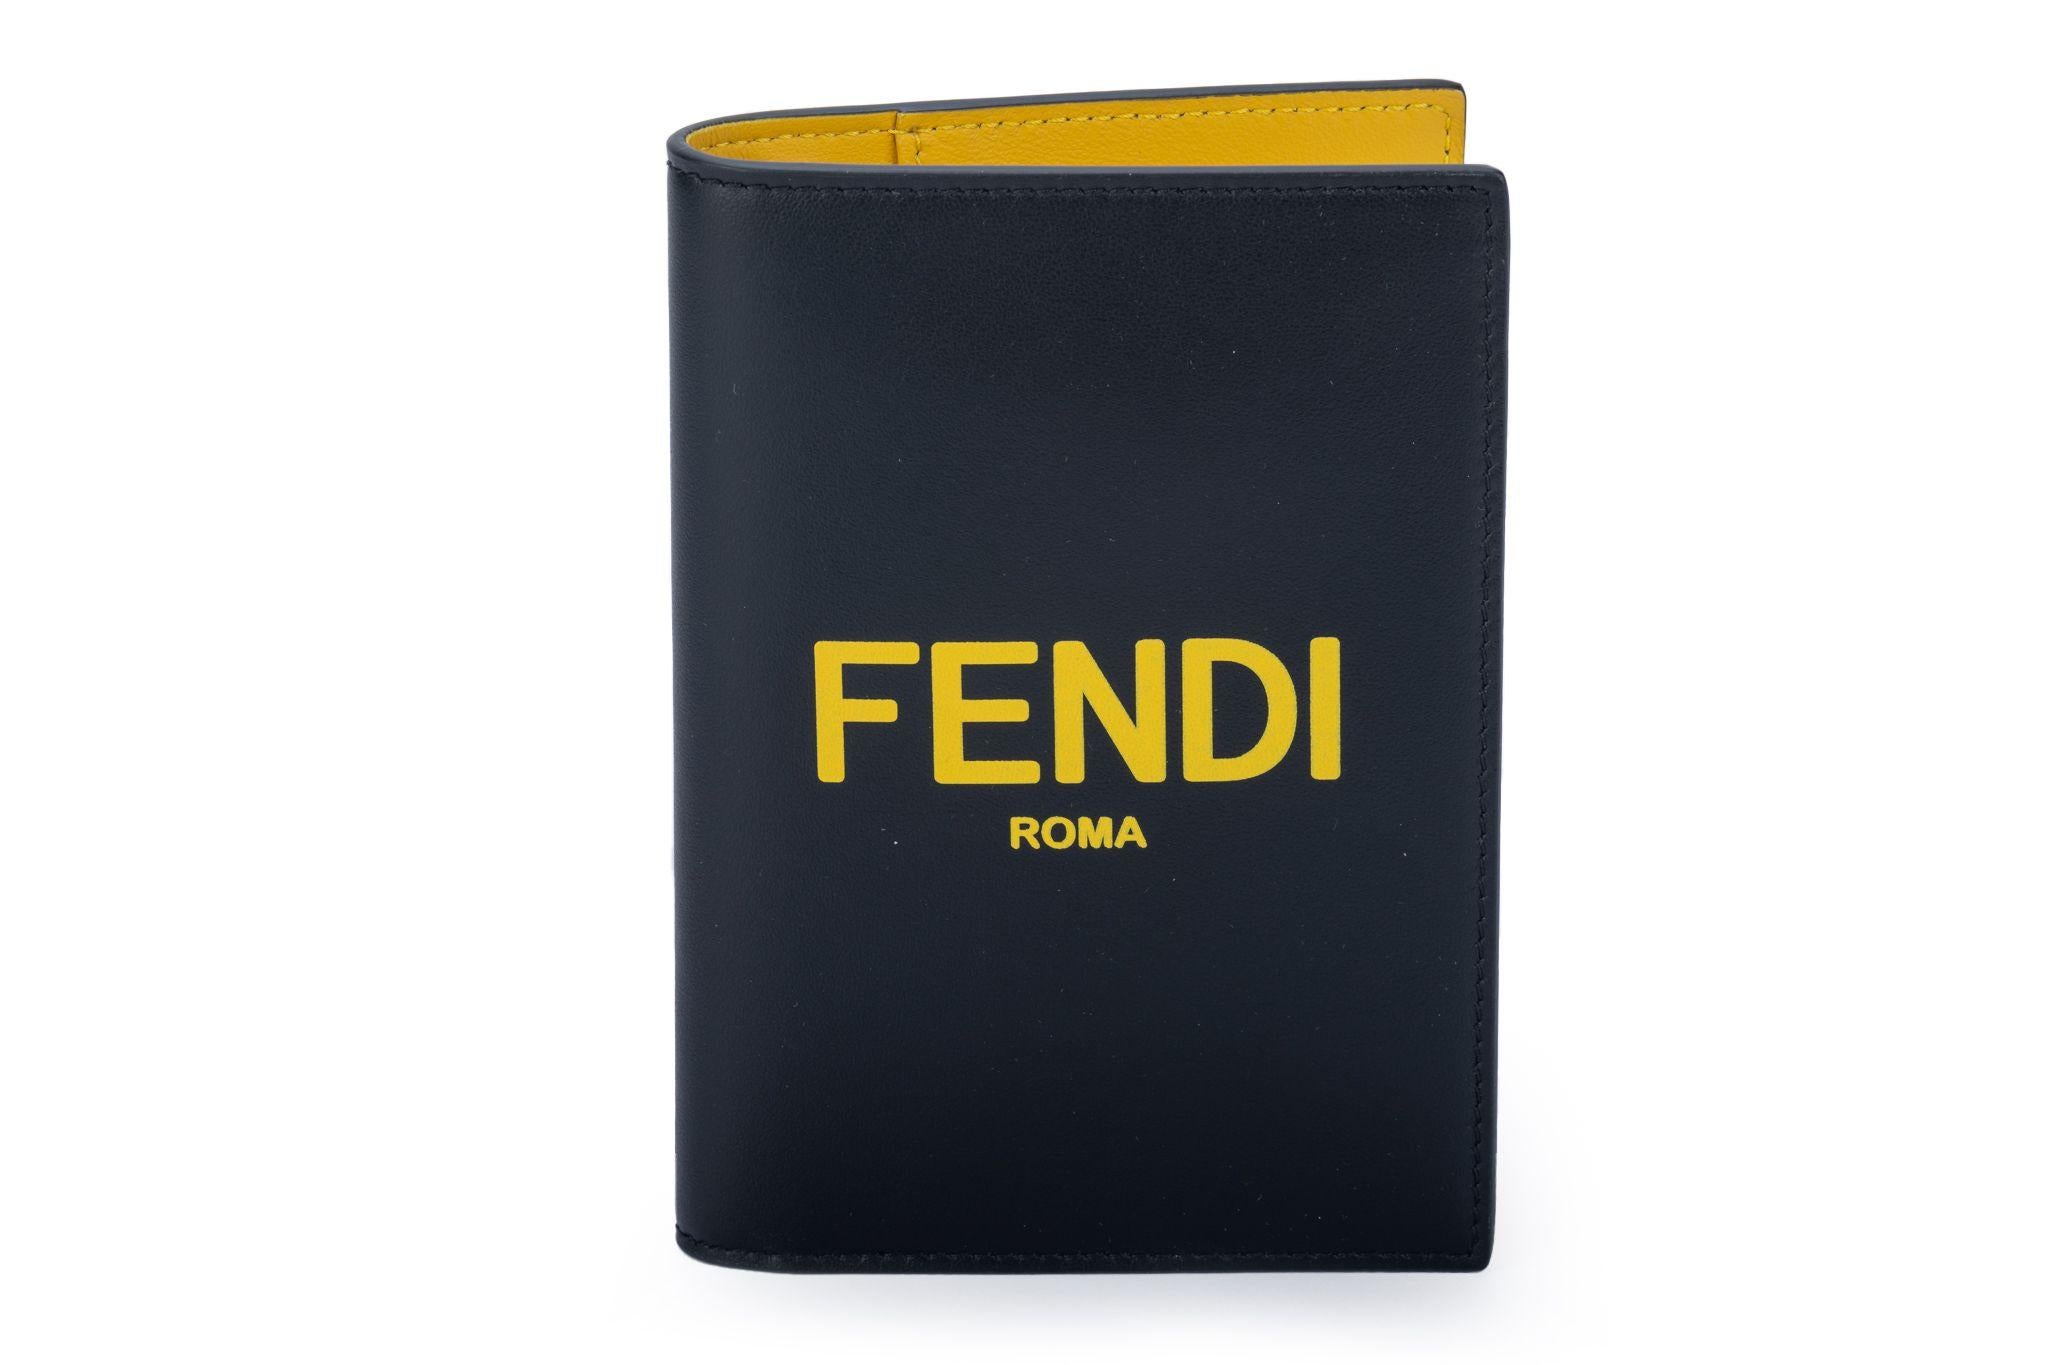 Couverture de passeport en cuir d'agneau noir et jaune de la marque Fendi. Livré avec sa boîte et sa housse d'origine.